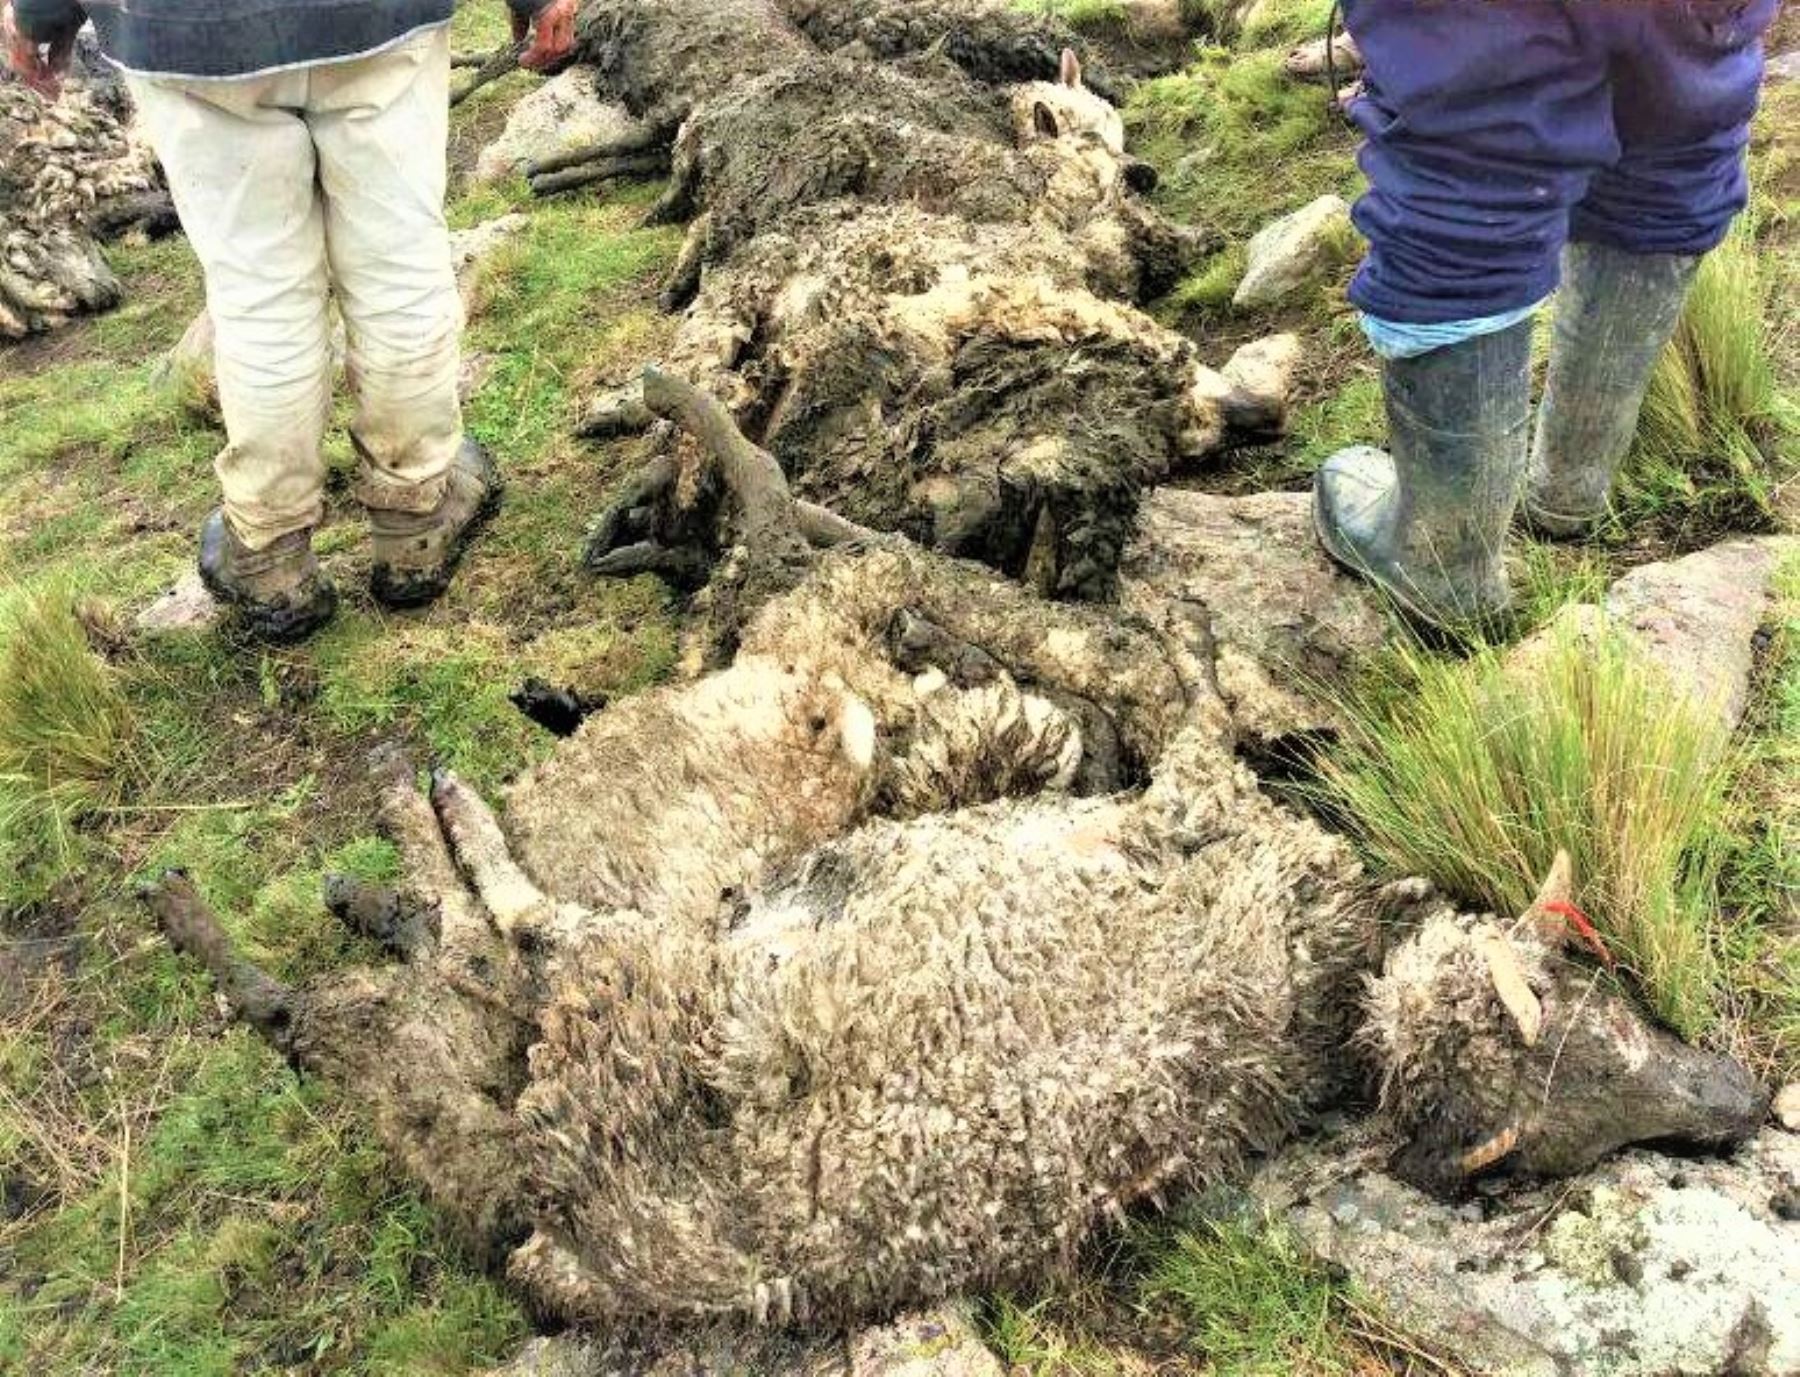 La Dirección Regional de Agricultura de Cusco realiza la evaluación de los daños, indicando que se debería declarar en emergencia ya que las lluvias aún continúan y se temen que más animales perezcan.